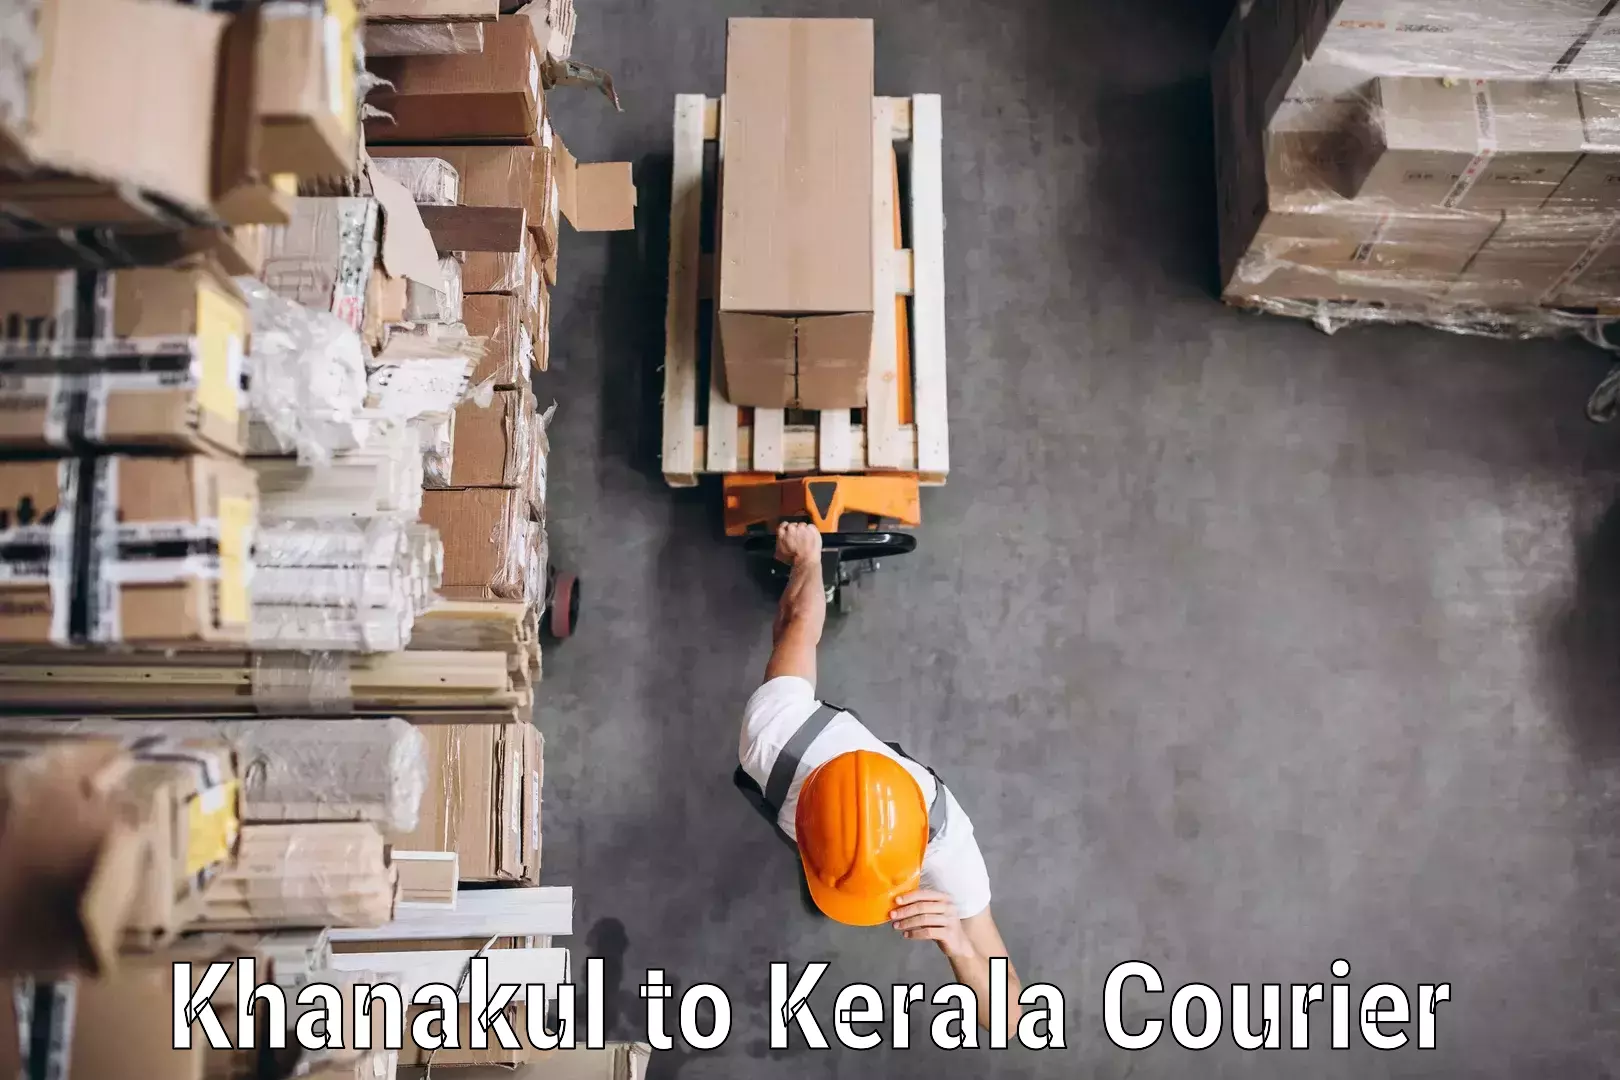 Secure shipping methods Khanakul to Kerala